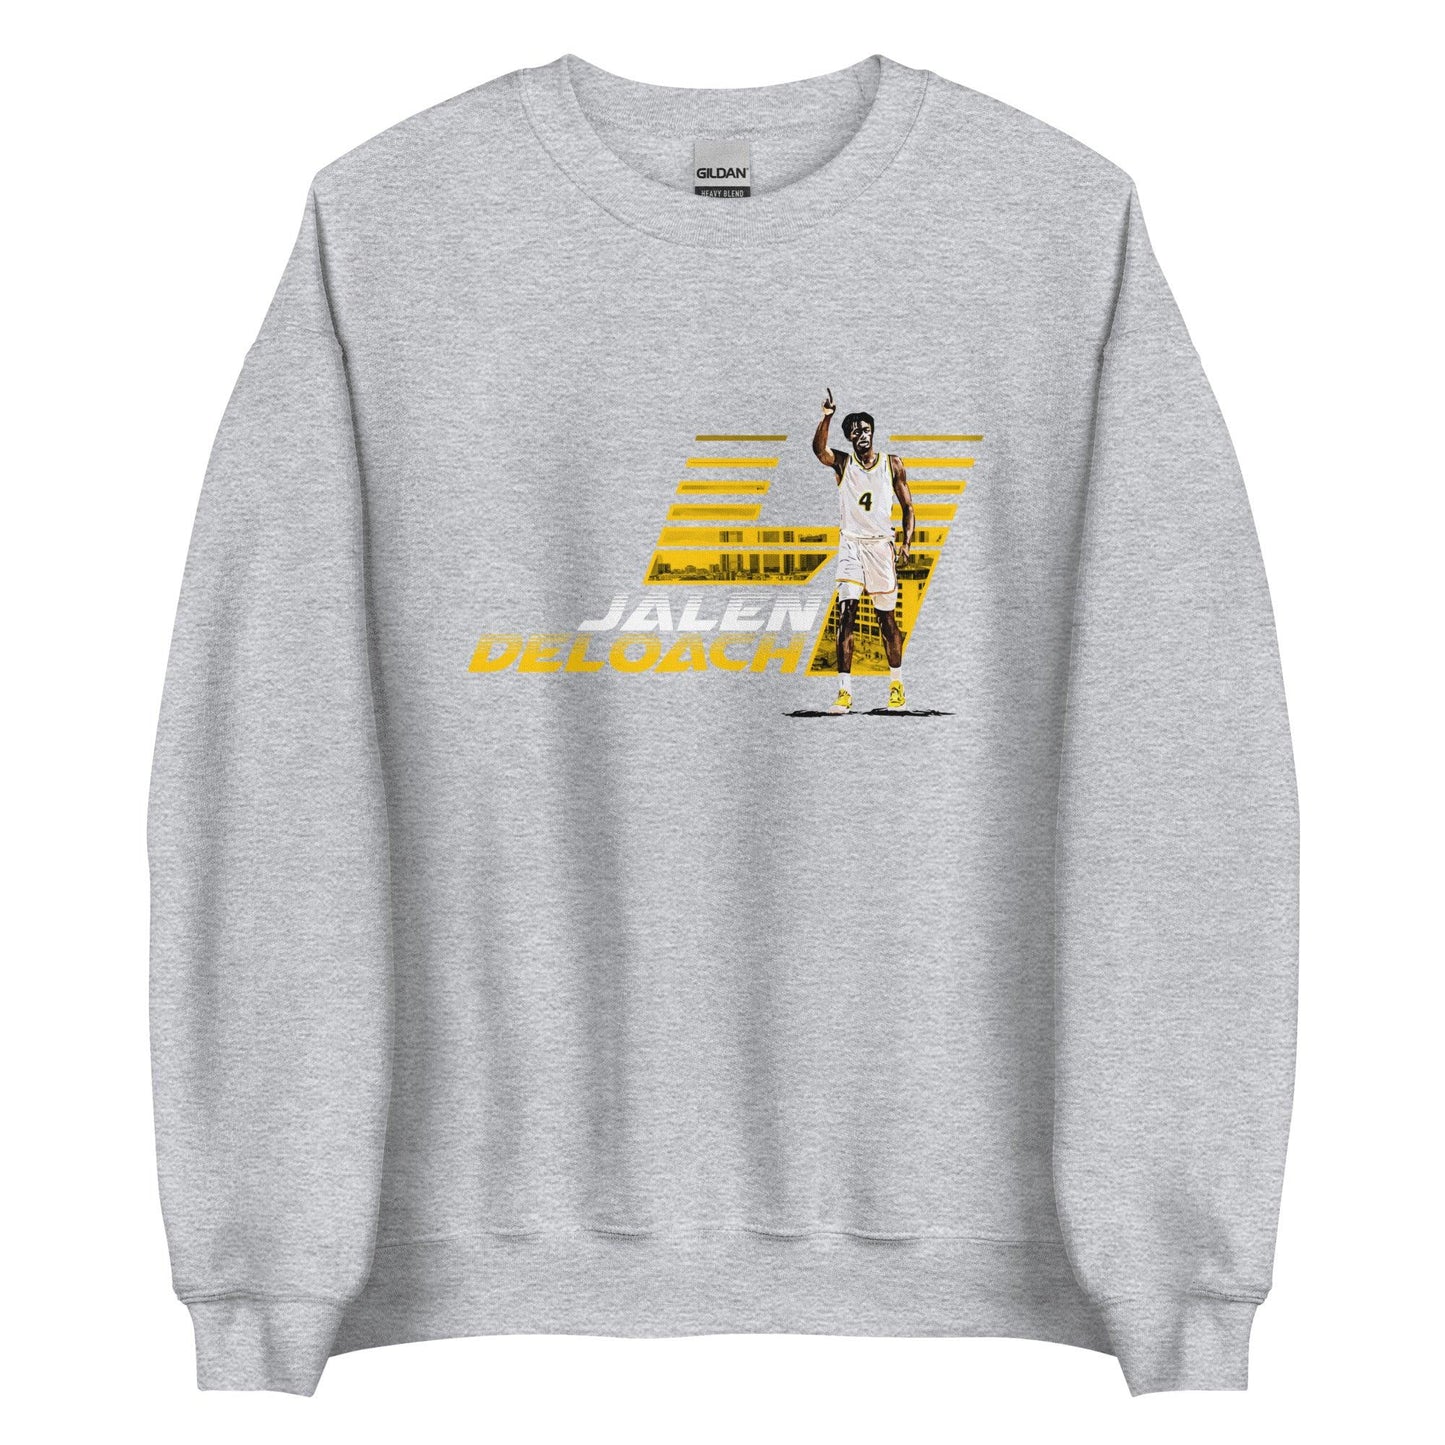 Jalen Deloach "Limited Edition" Sweatshirt - Fan Arch